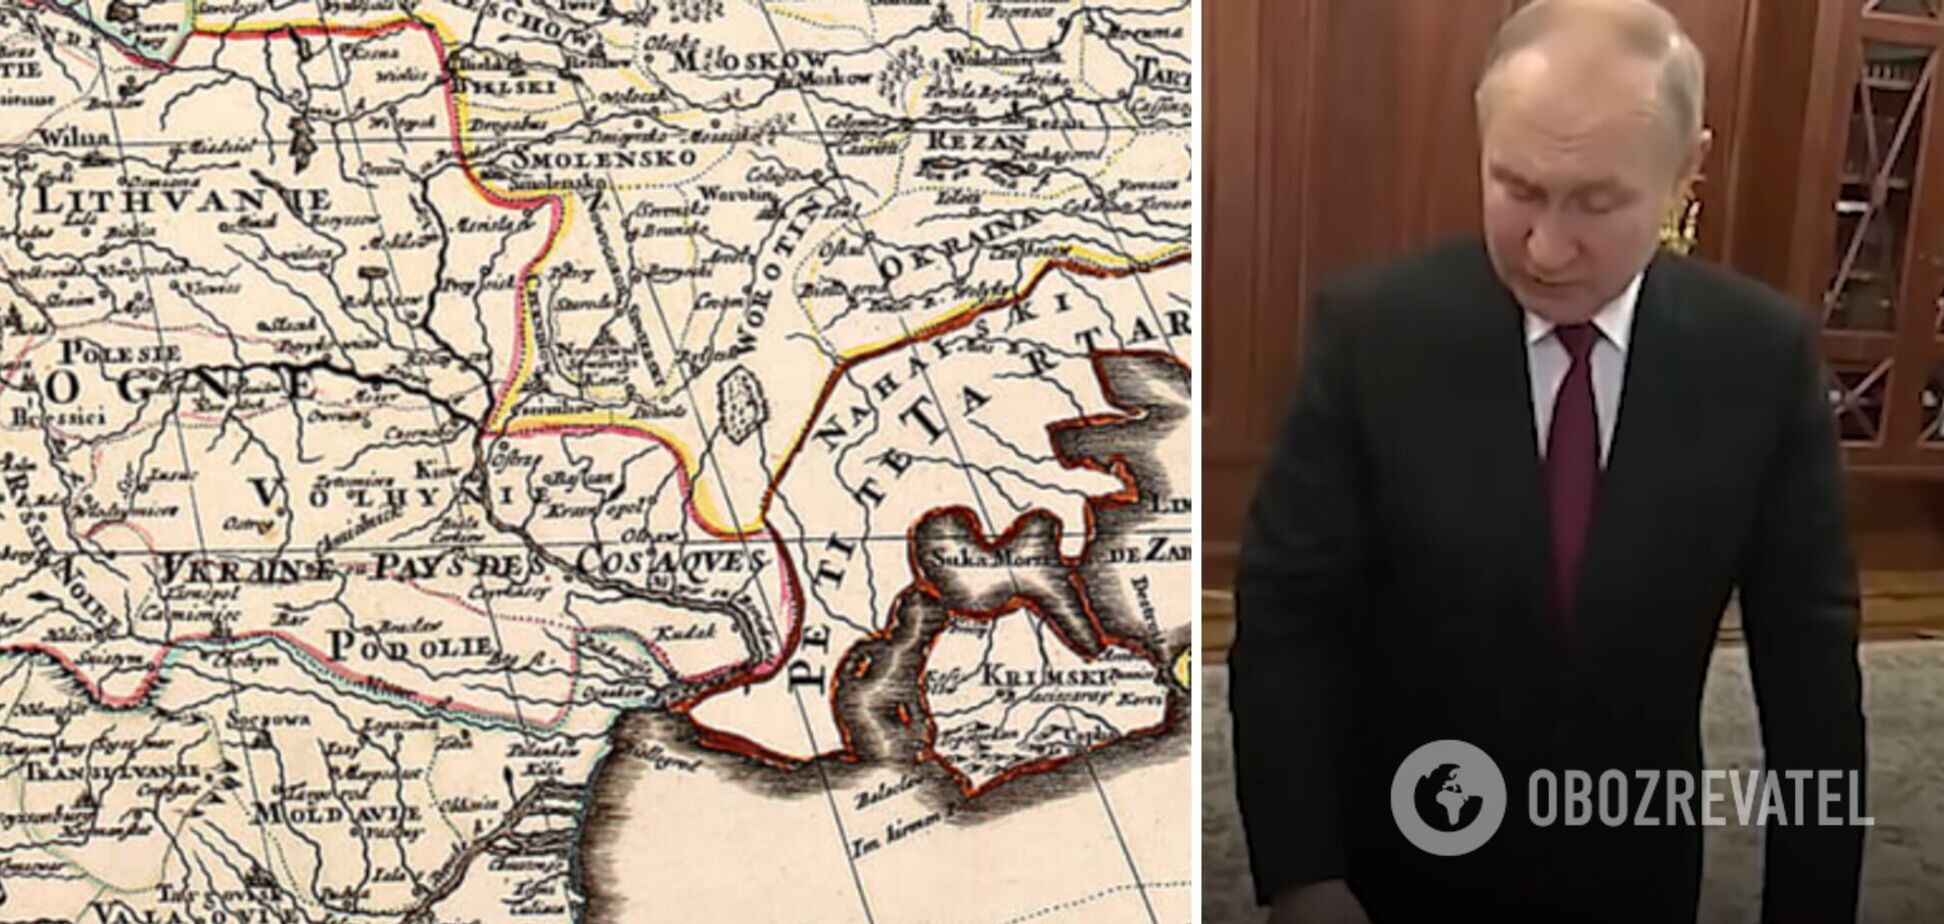 Путин 'не увидел' Украину на старинной карте: Фейгин высказался по поводу скандала